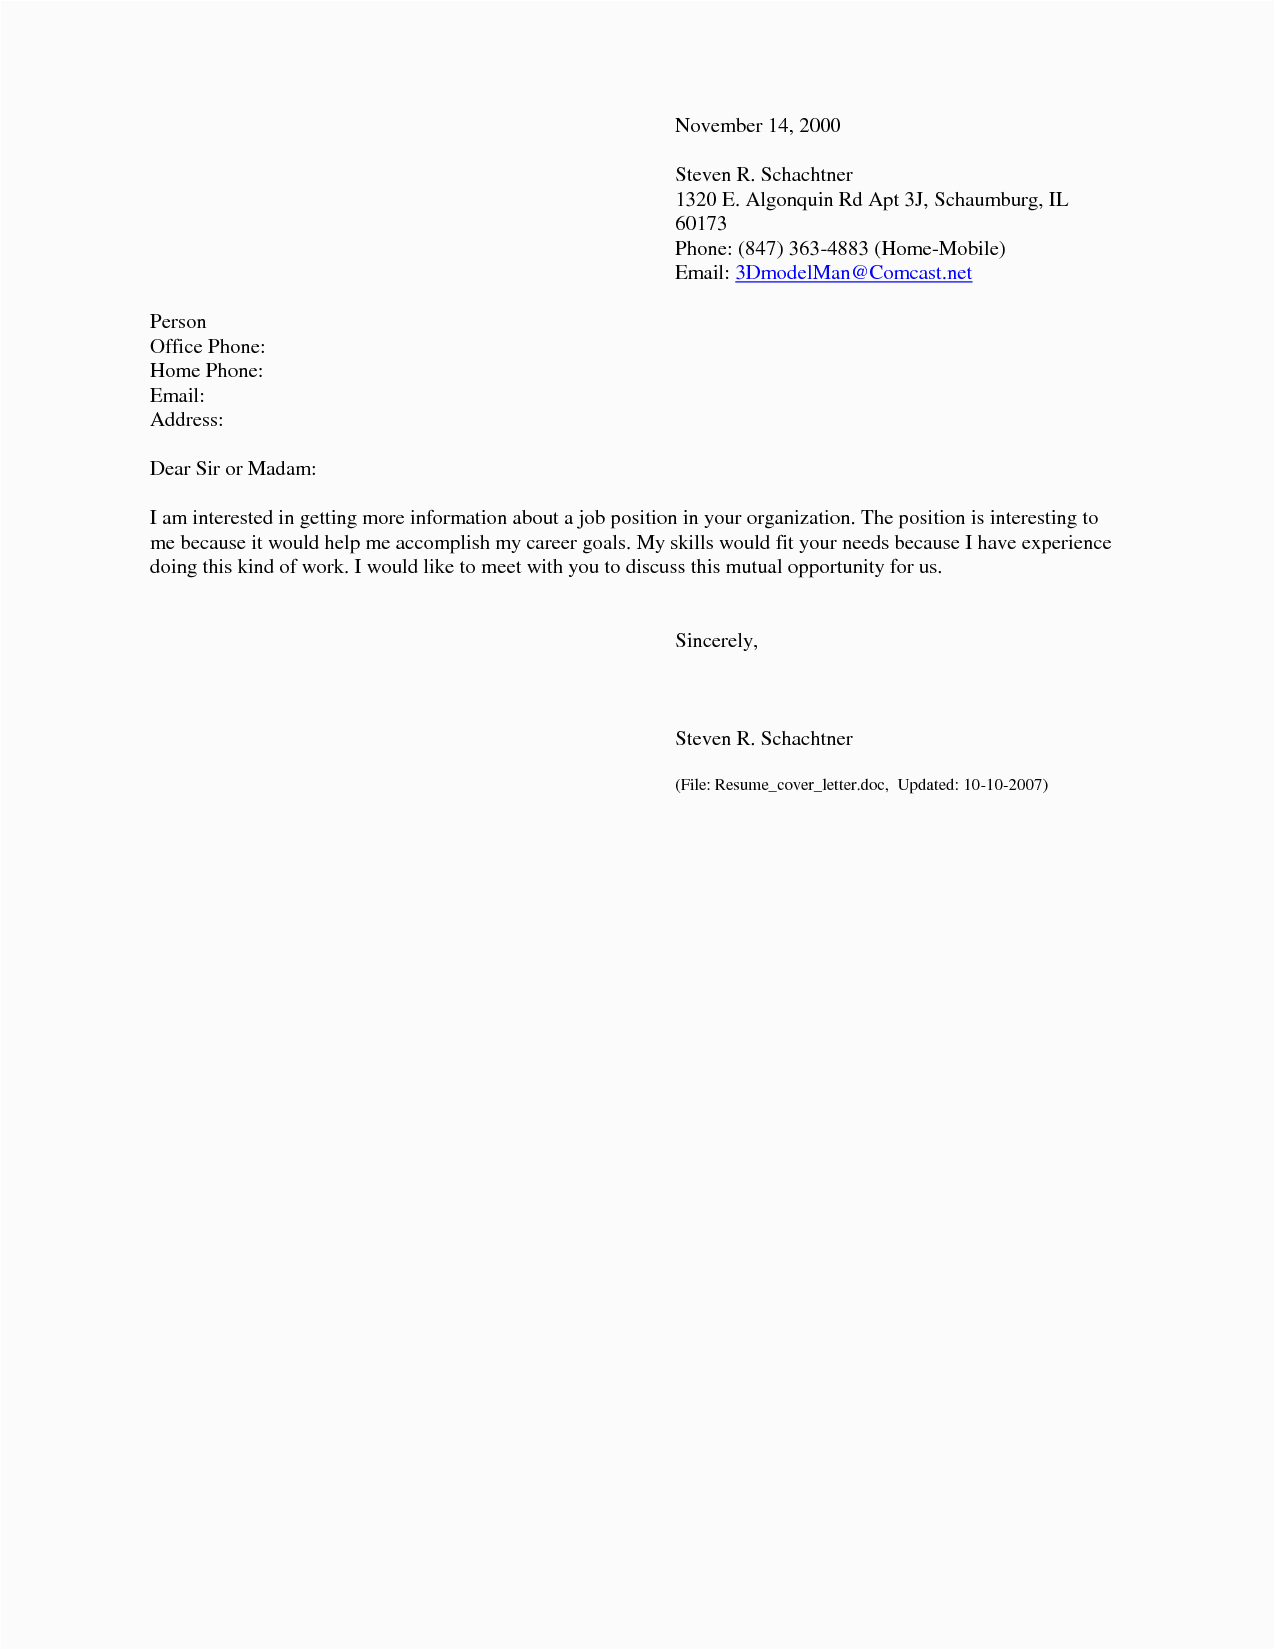 Sample Letter for Sending Resume by Email Cover Letter for Emailing Resume Database